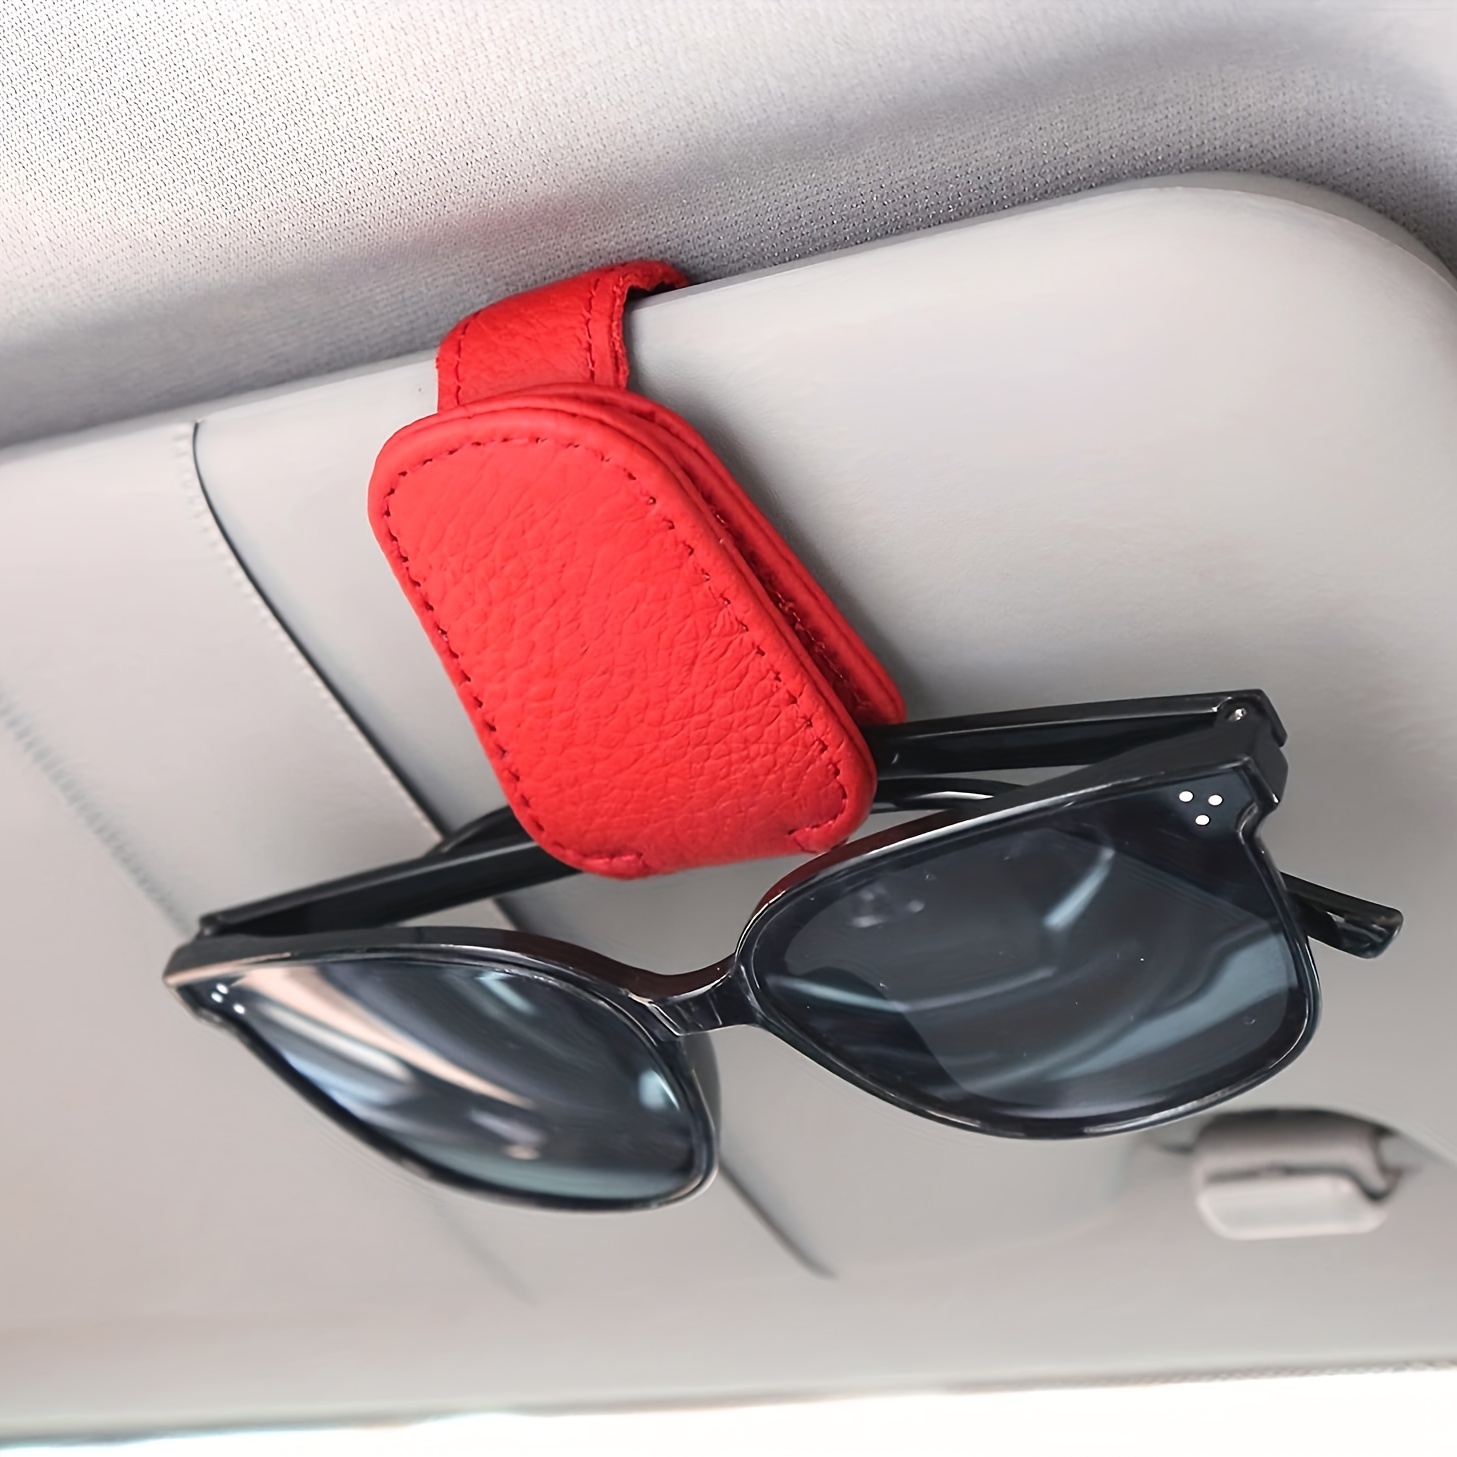 Soporte con clip para aguantar las gafas de sol en el coche comprar a buen  precio — entrega gratuita, reseñas reales con fotos — Joom